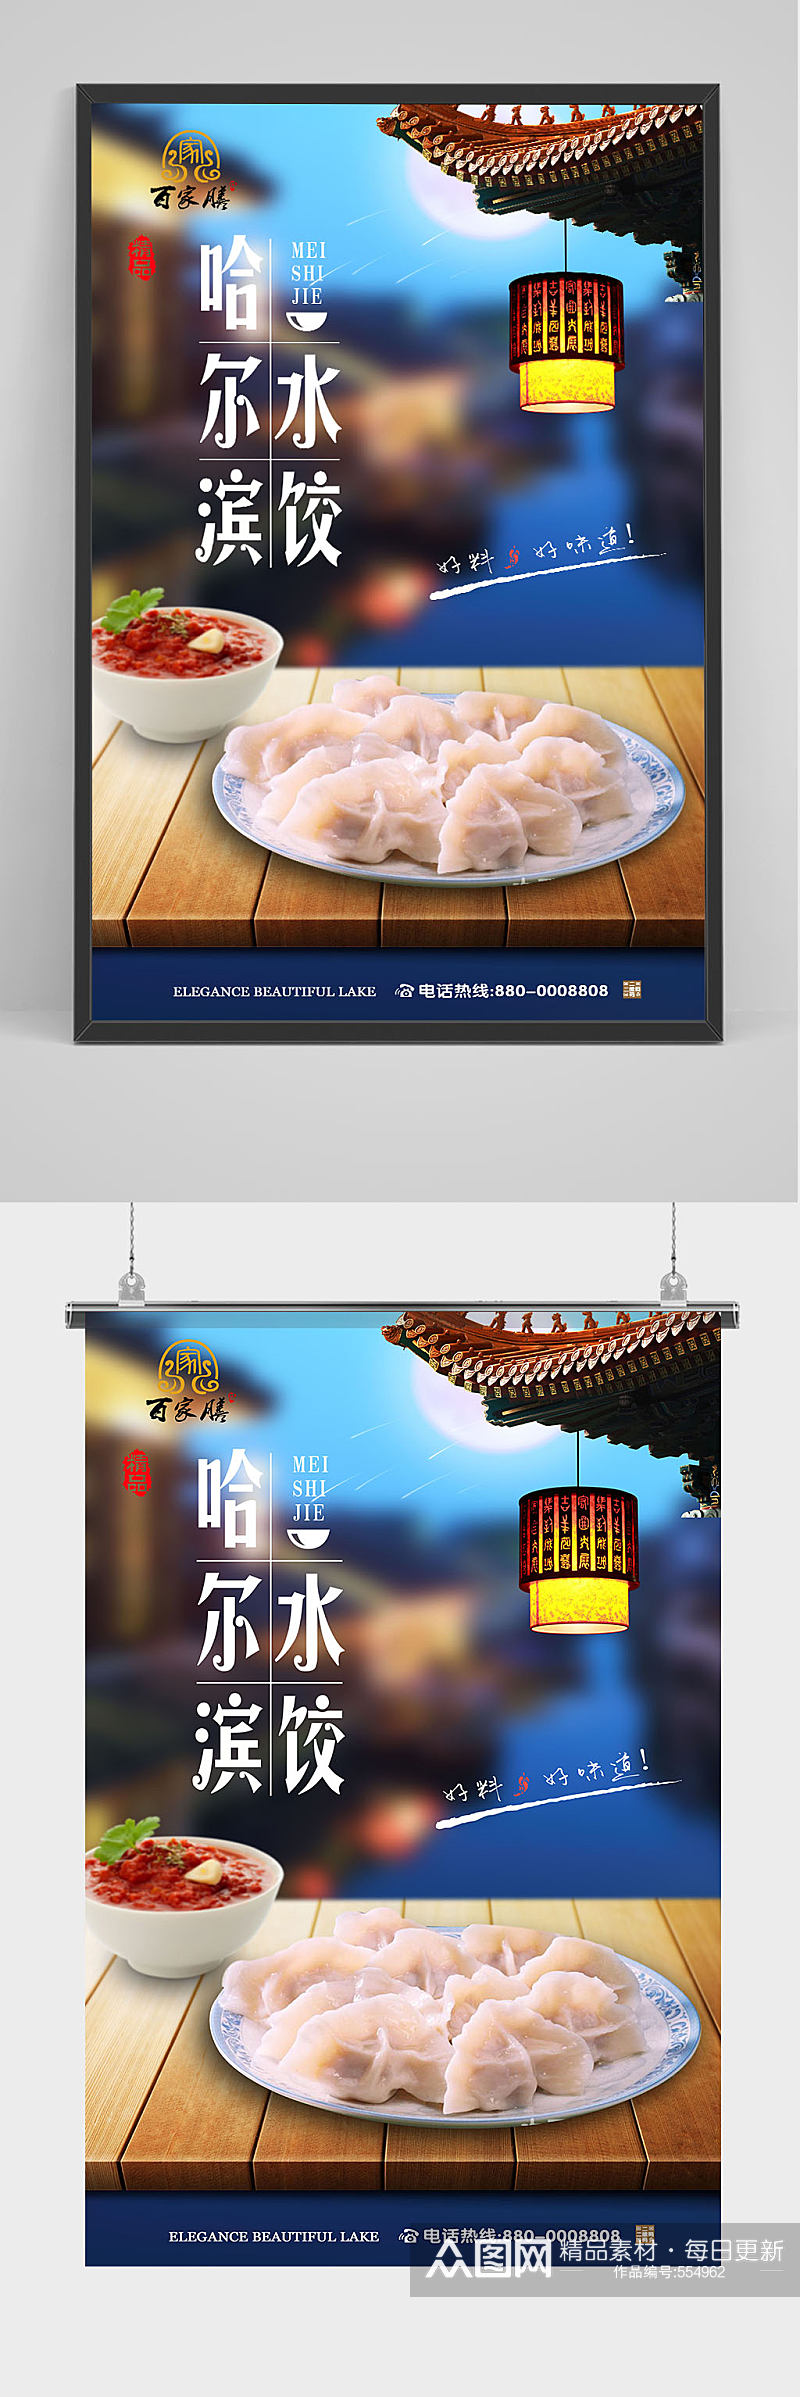 哈尔滨美食水饺海报素材